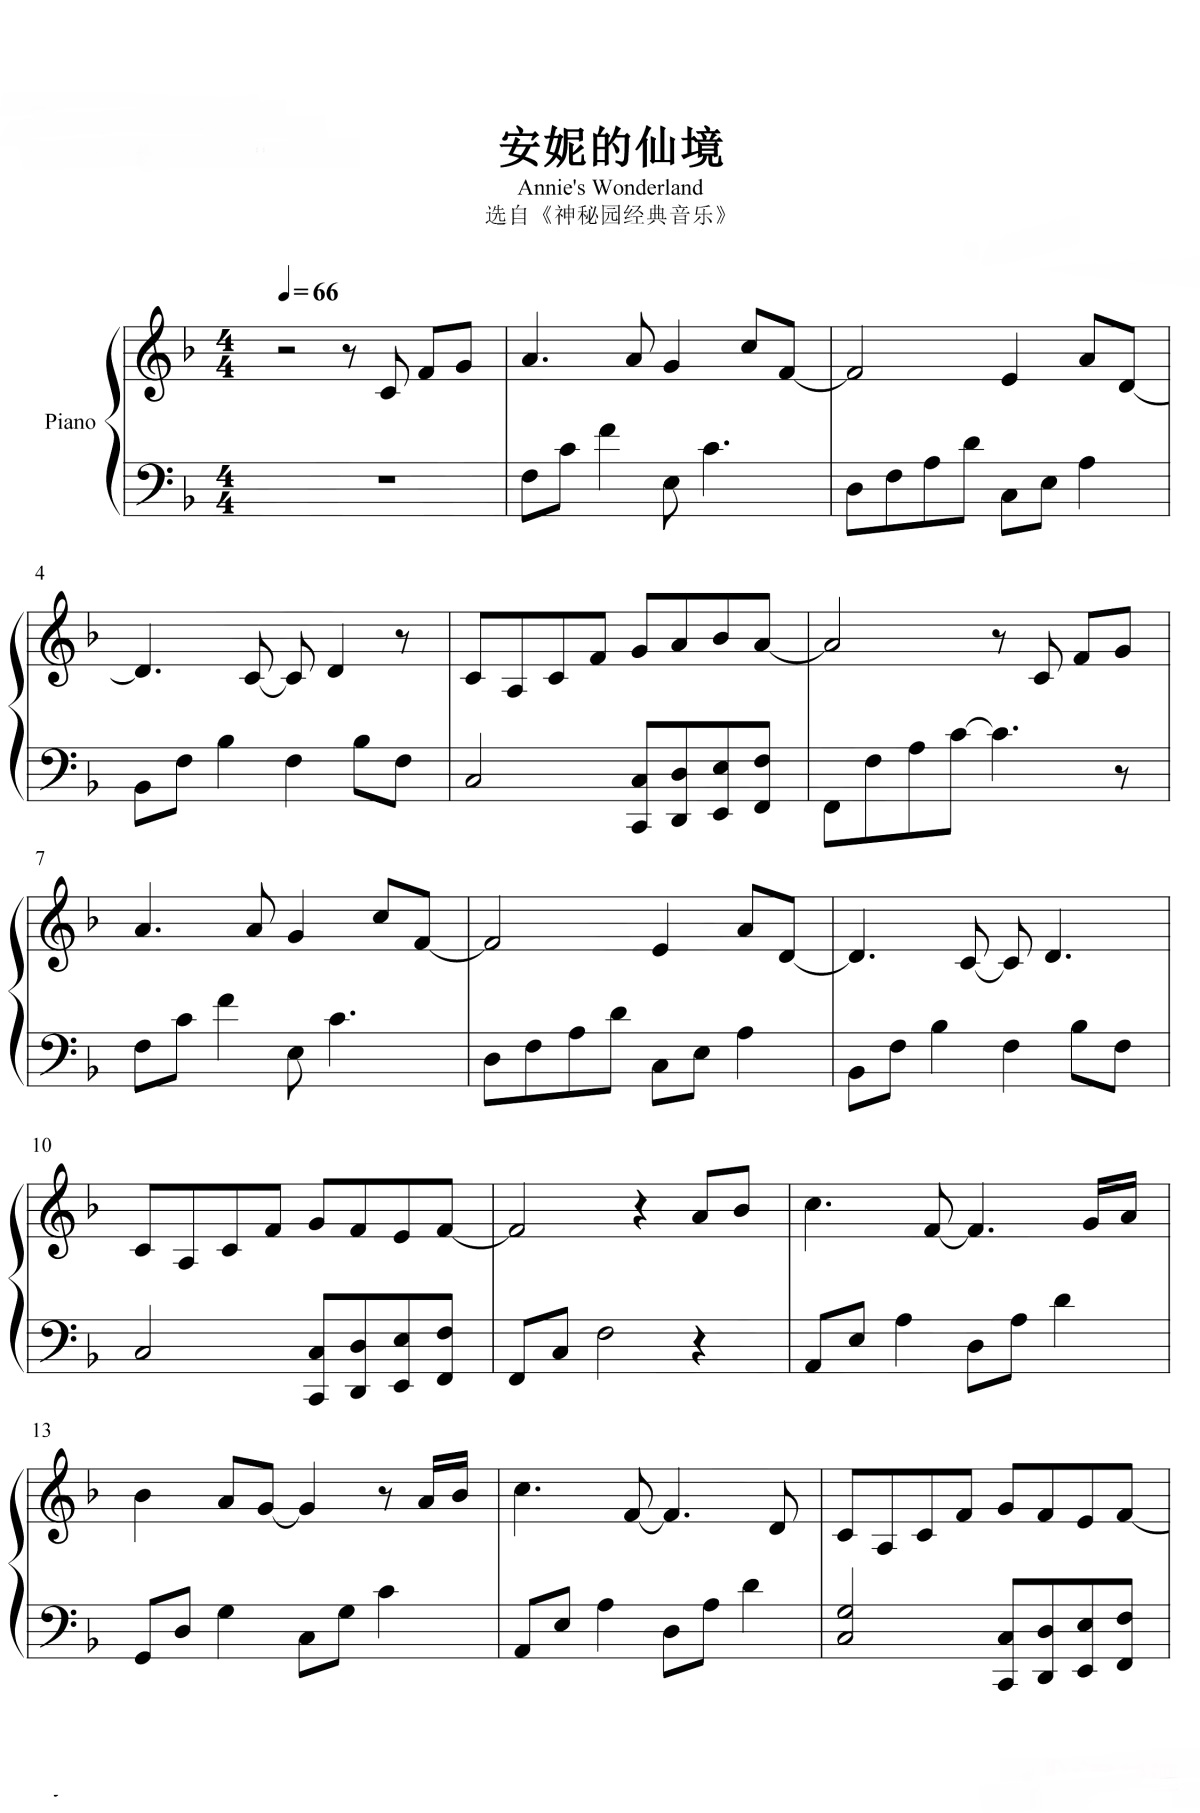 《安妮的仙境》的钢琴谱钢琴曲谱 - Bandari